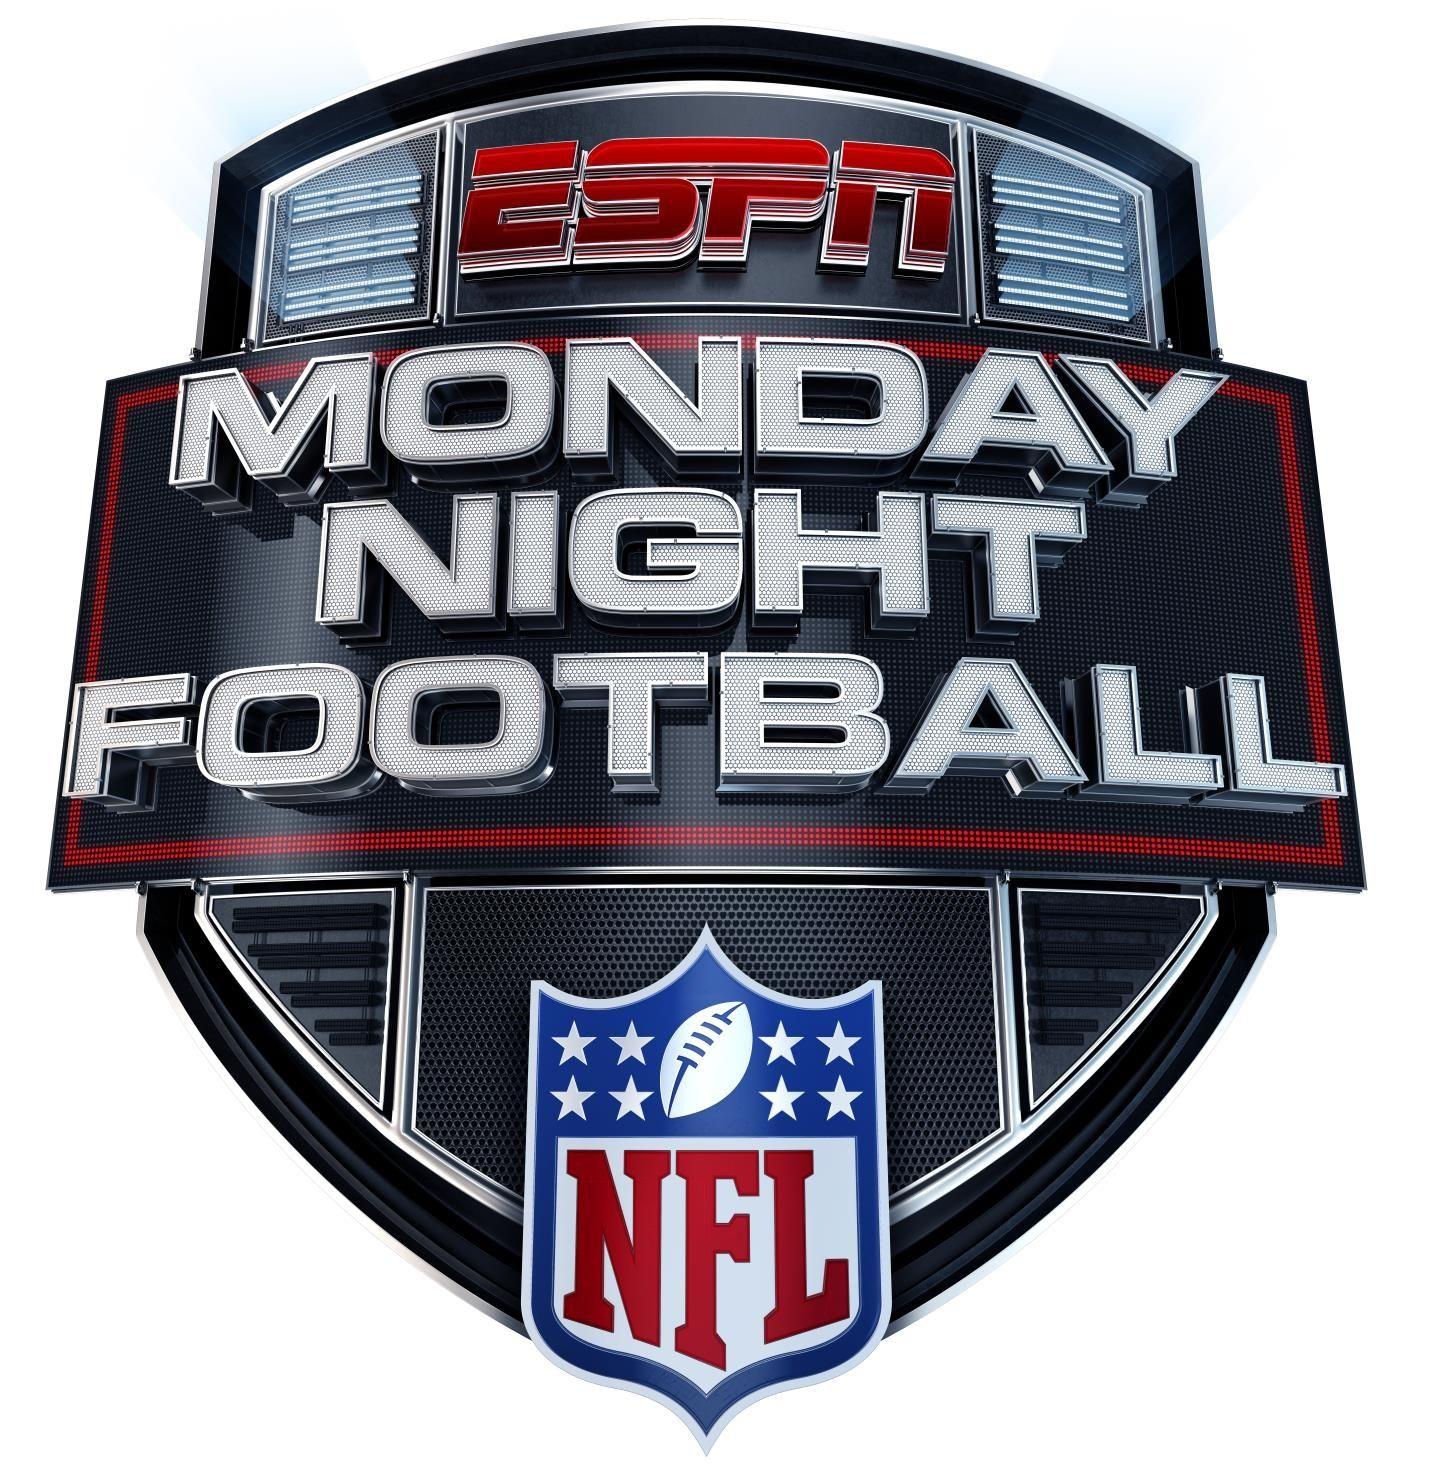 ESPN Sports Logo - ESPN to unveil new MNF logo this fall - ESPN Front Row